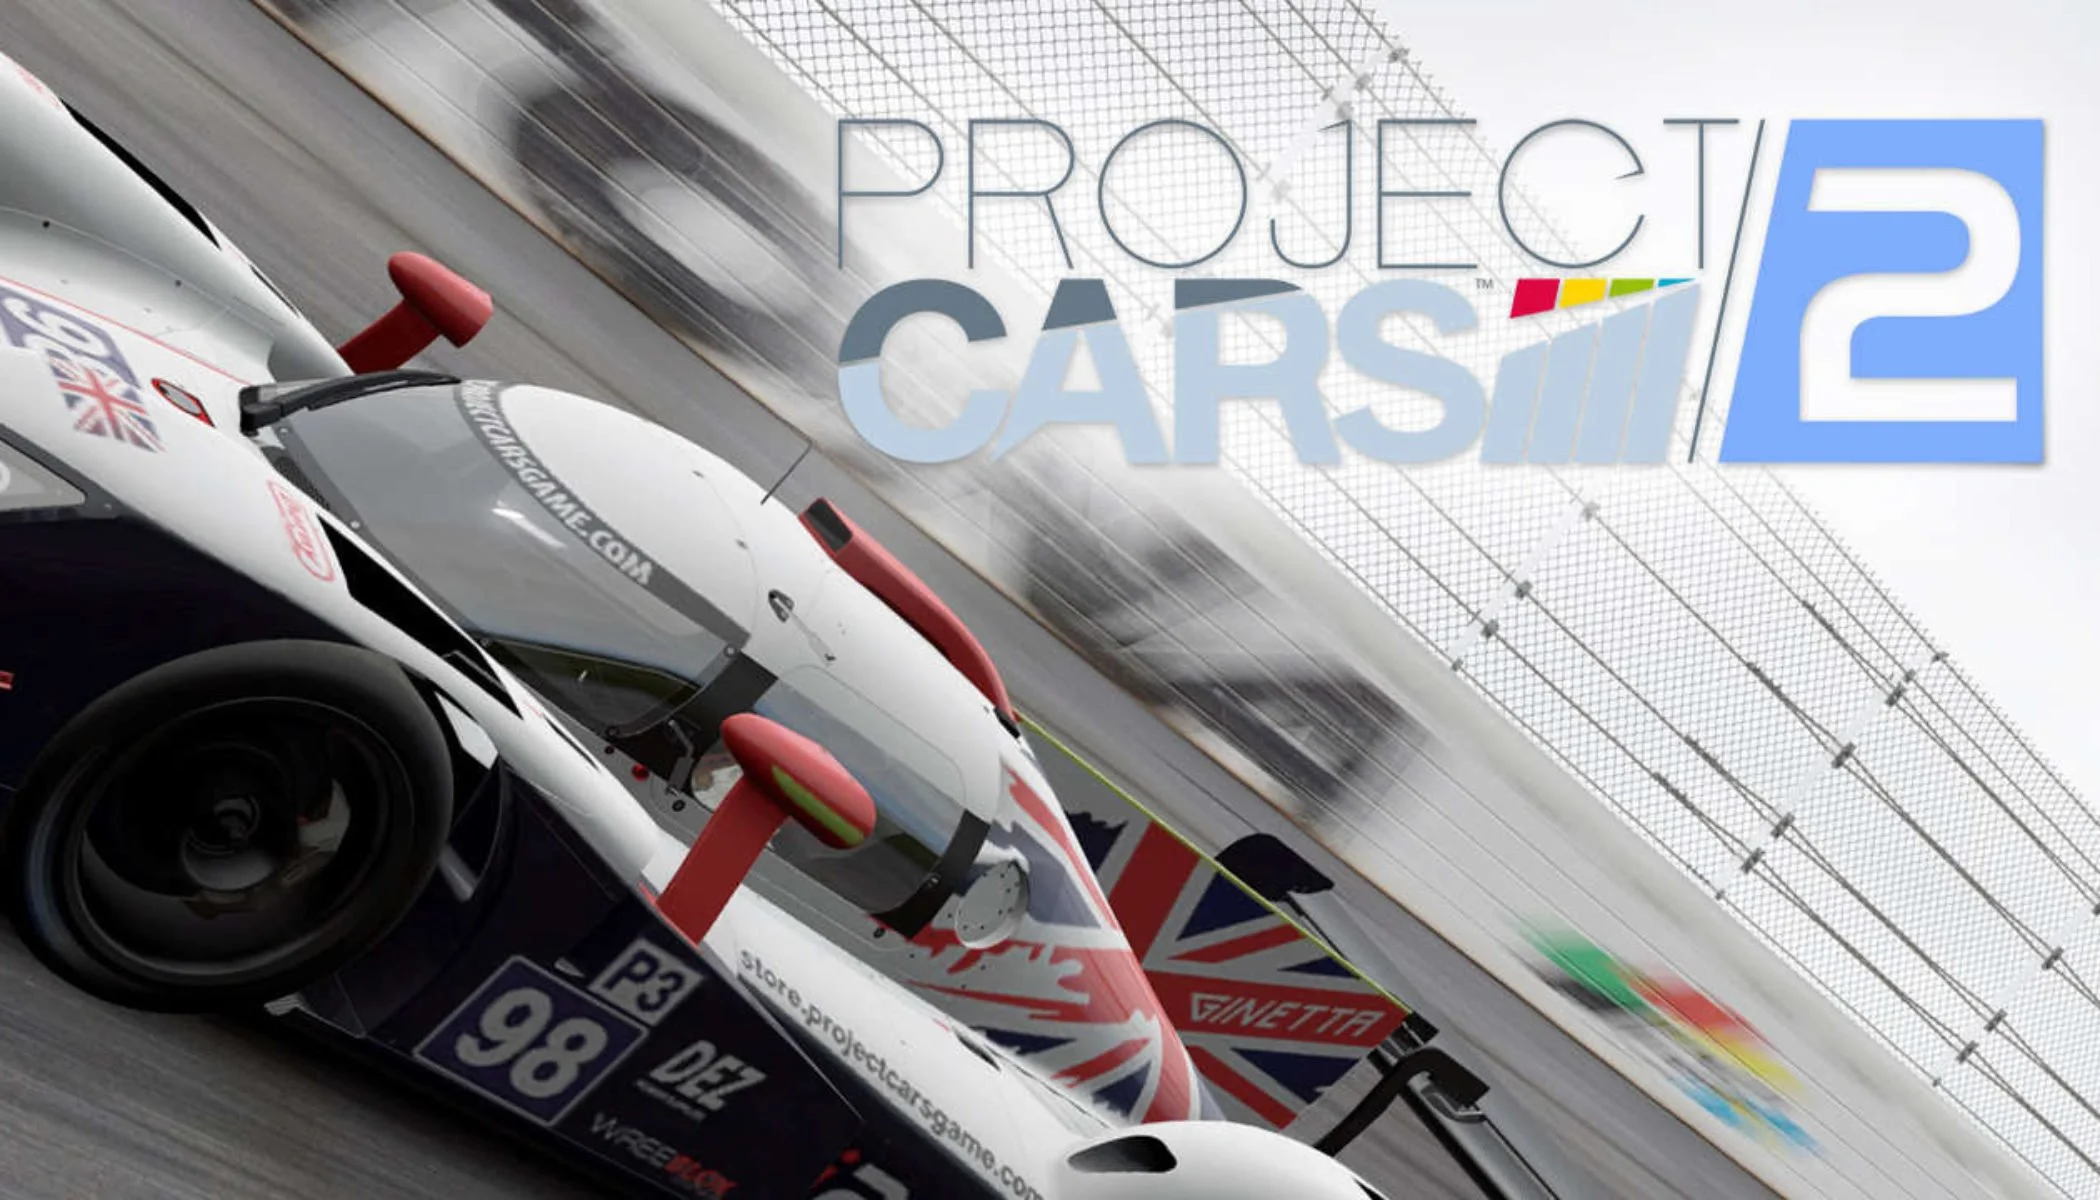 Project CARS 2 воспроизводит все основные дисциплины автоспорта и все возможные условия, в которых могут проходить гонки.​ Но насколько хорошо ей это удается? Давайте разбираться